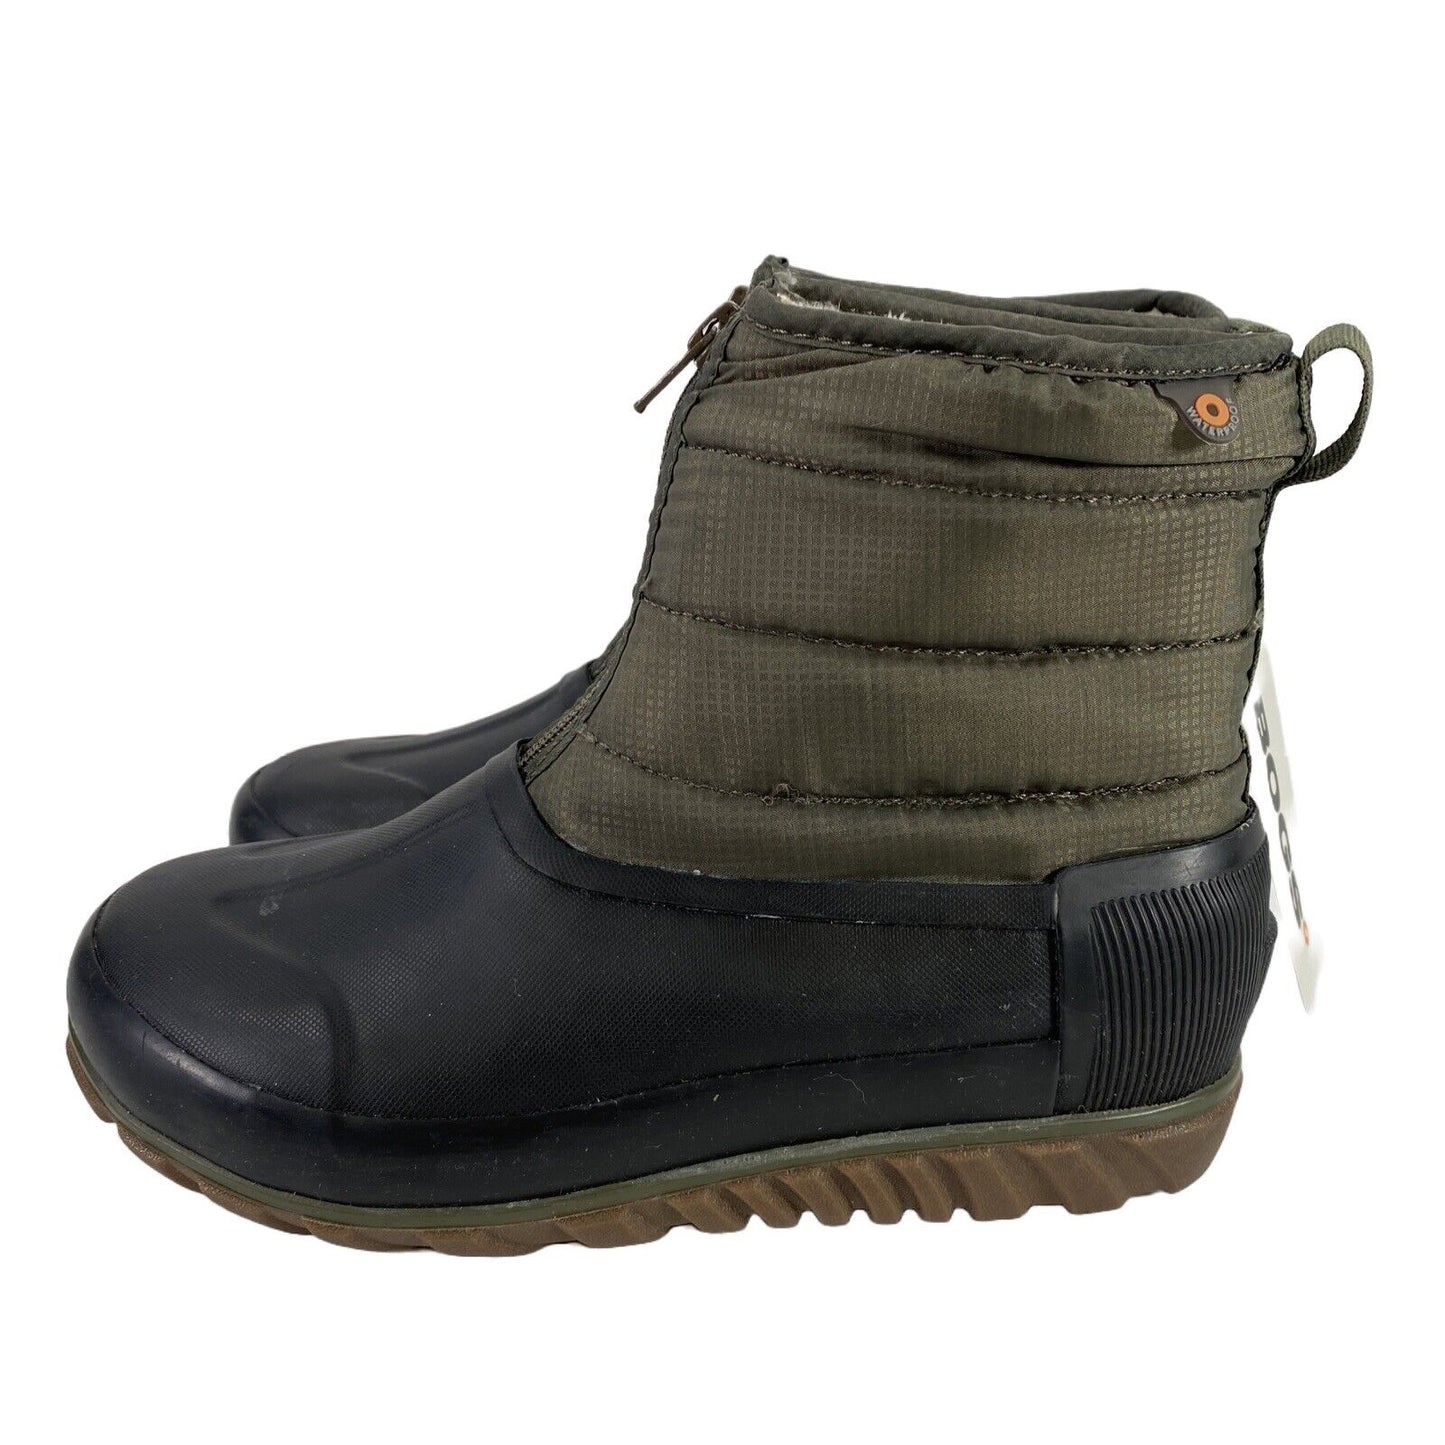 NUEVAS botas impermeables con cremallera de invierno informales en verde oliva para mujer Bogs - 6